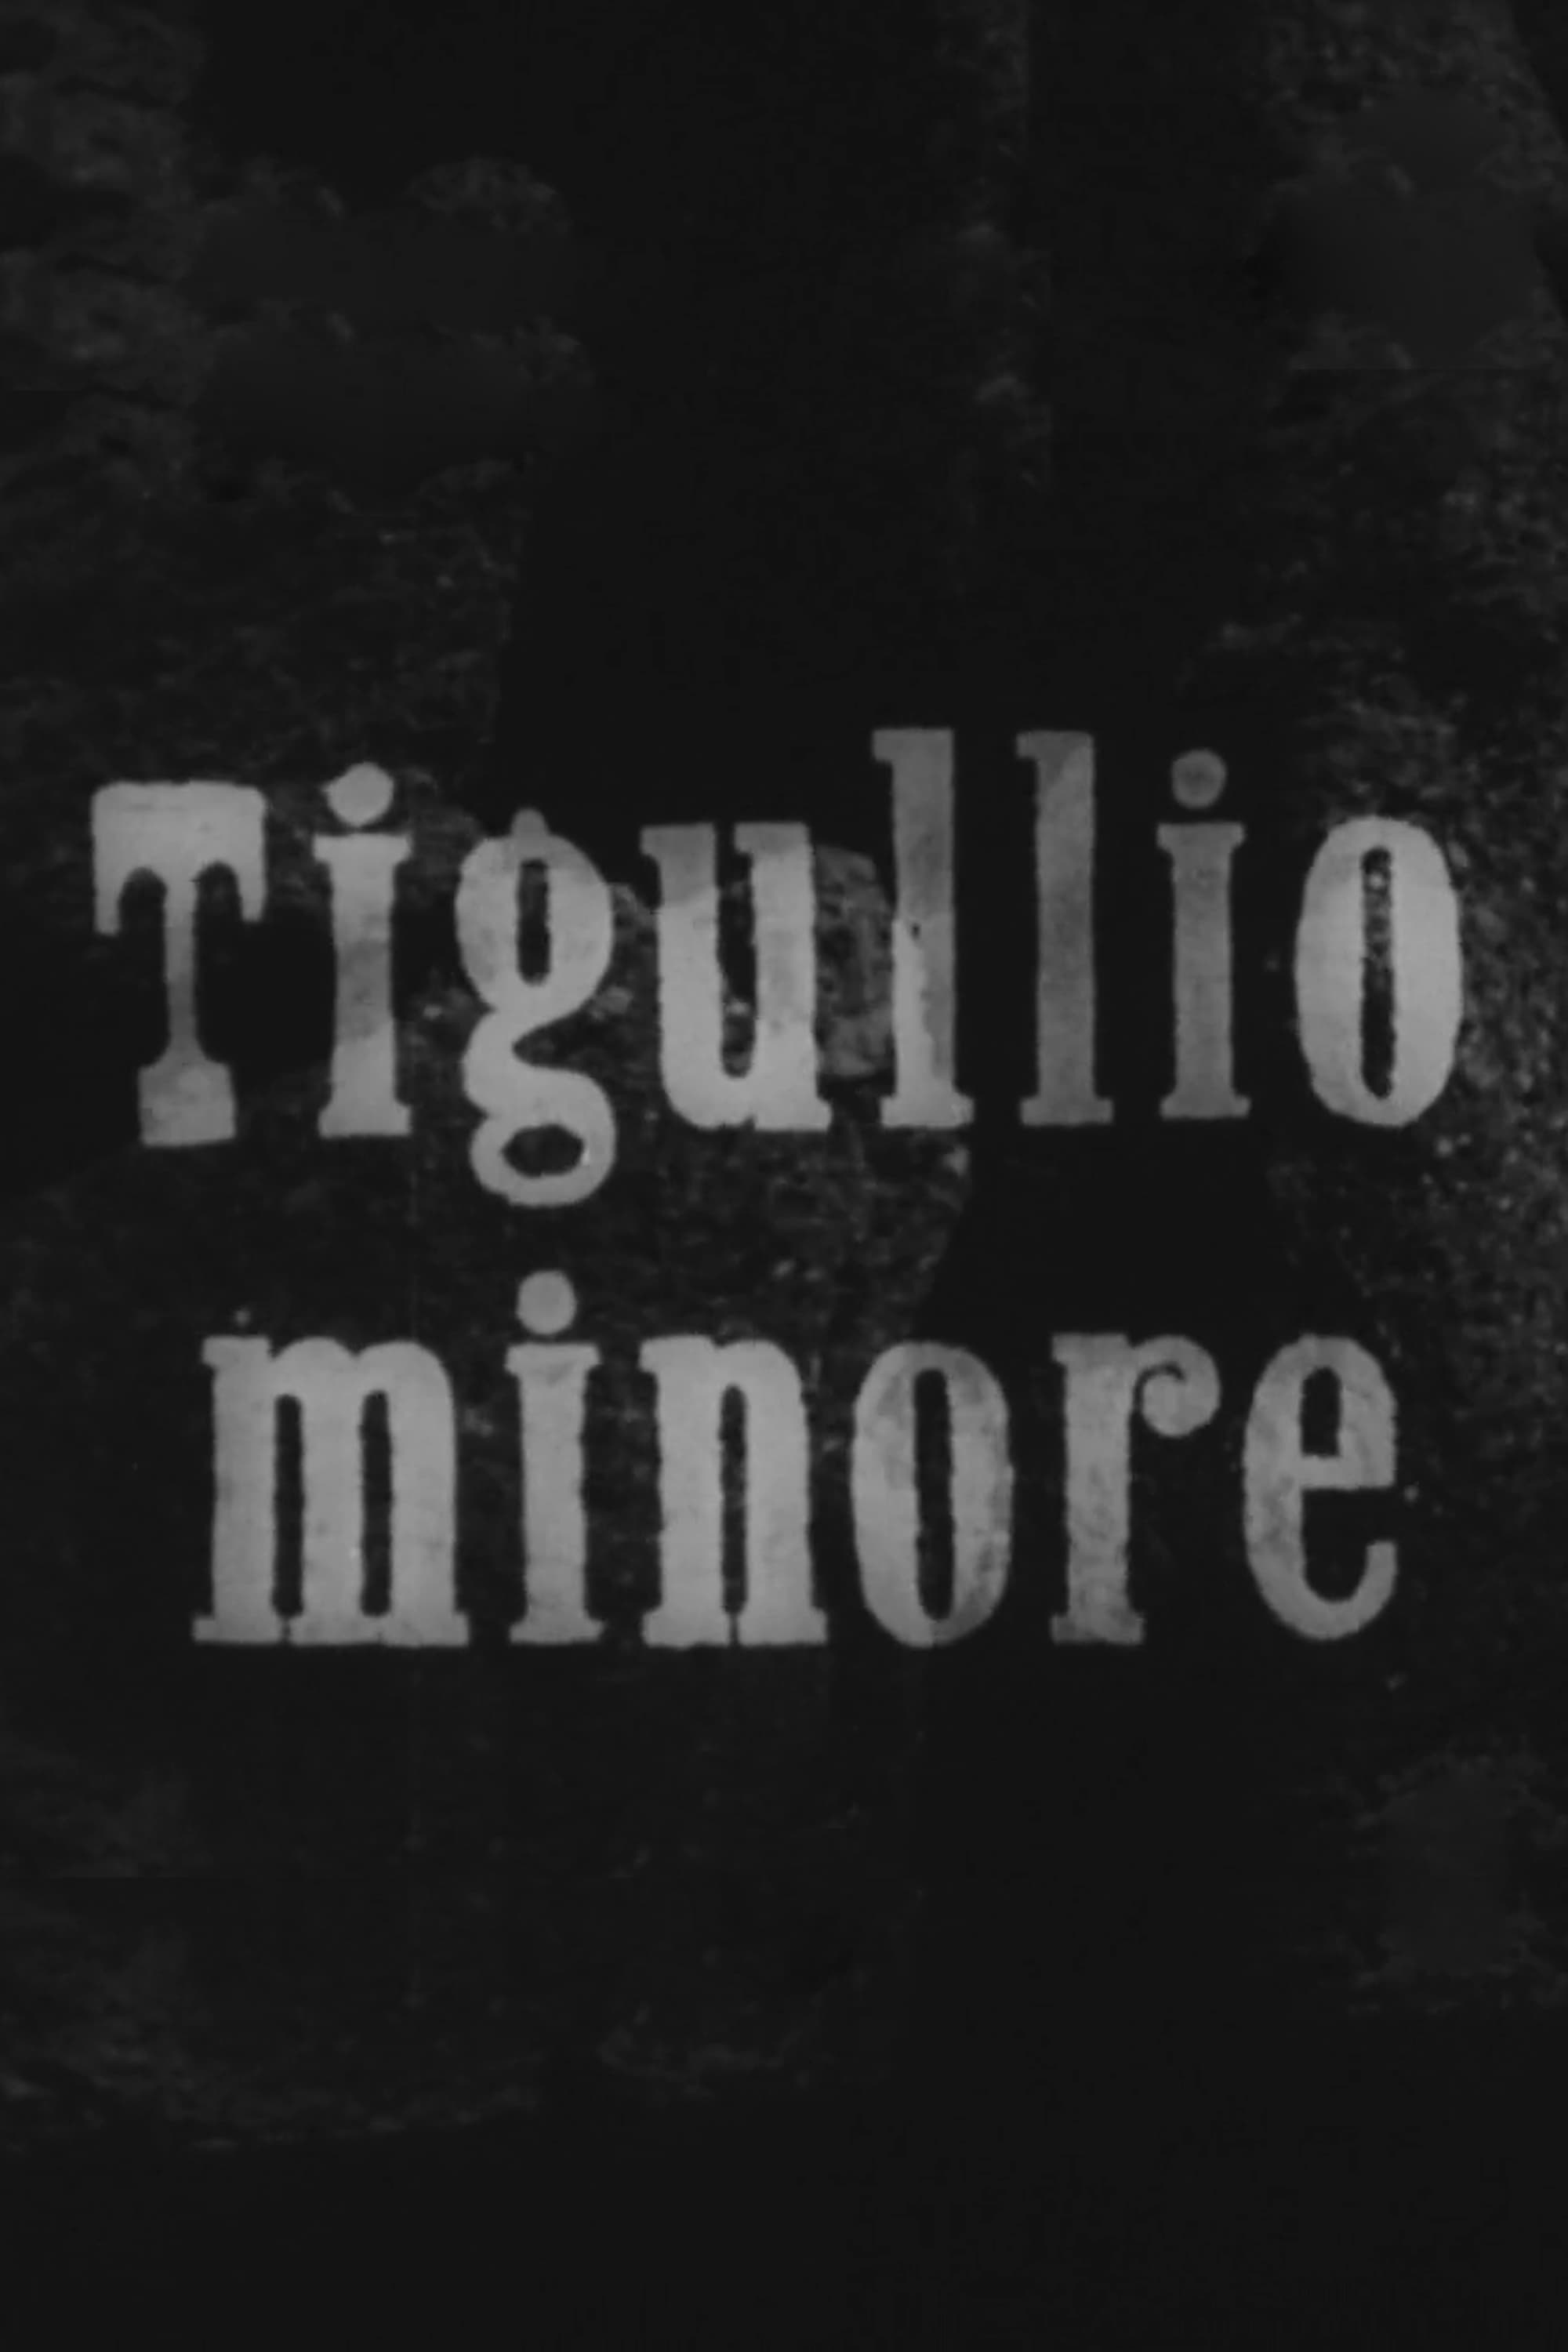 Tigullio minore (1947)